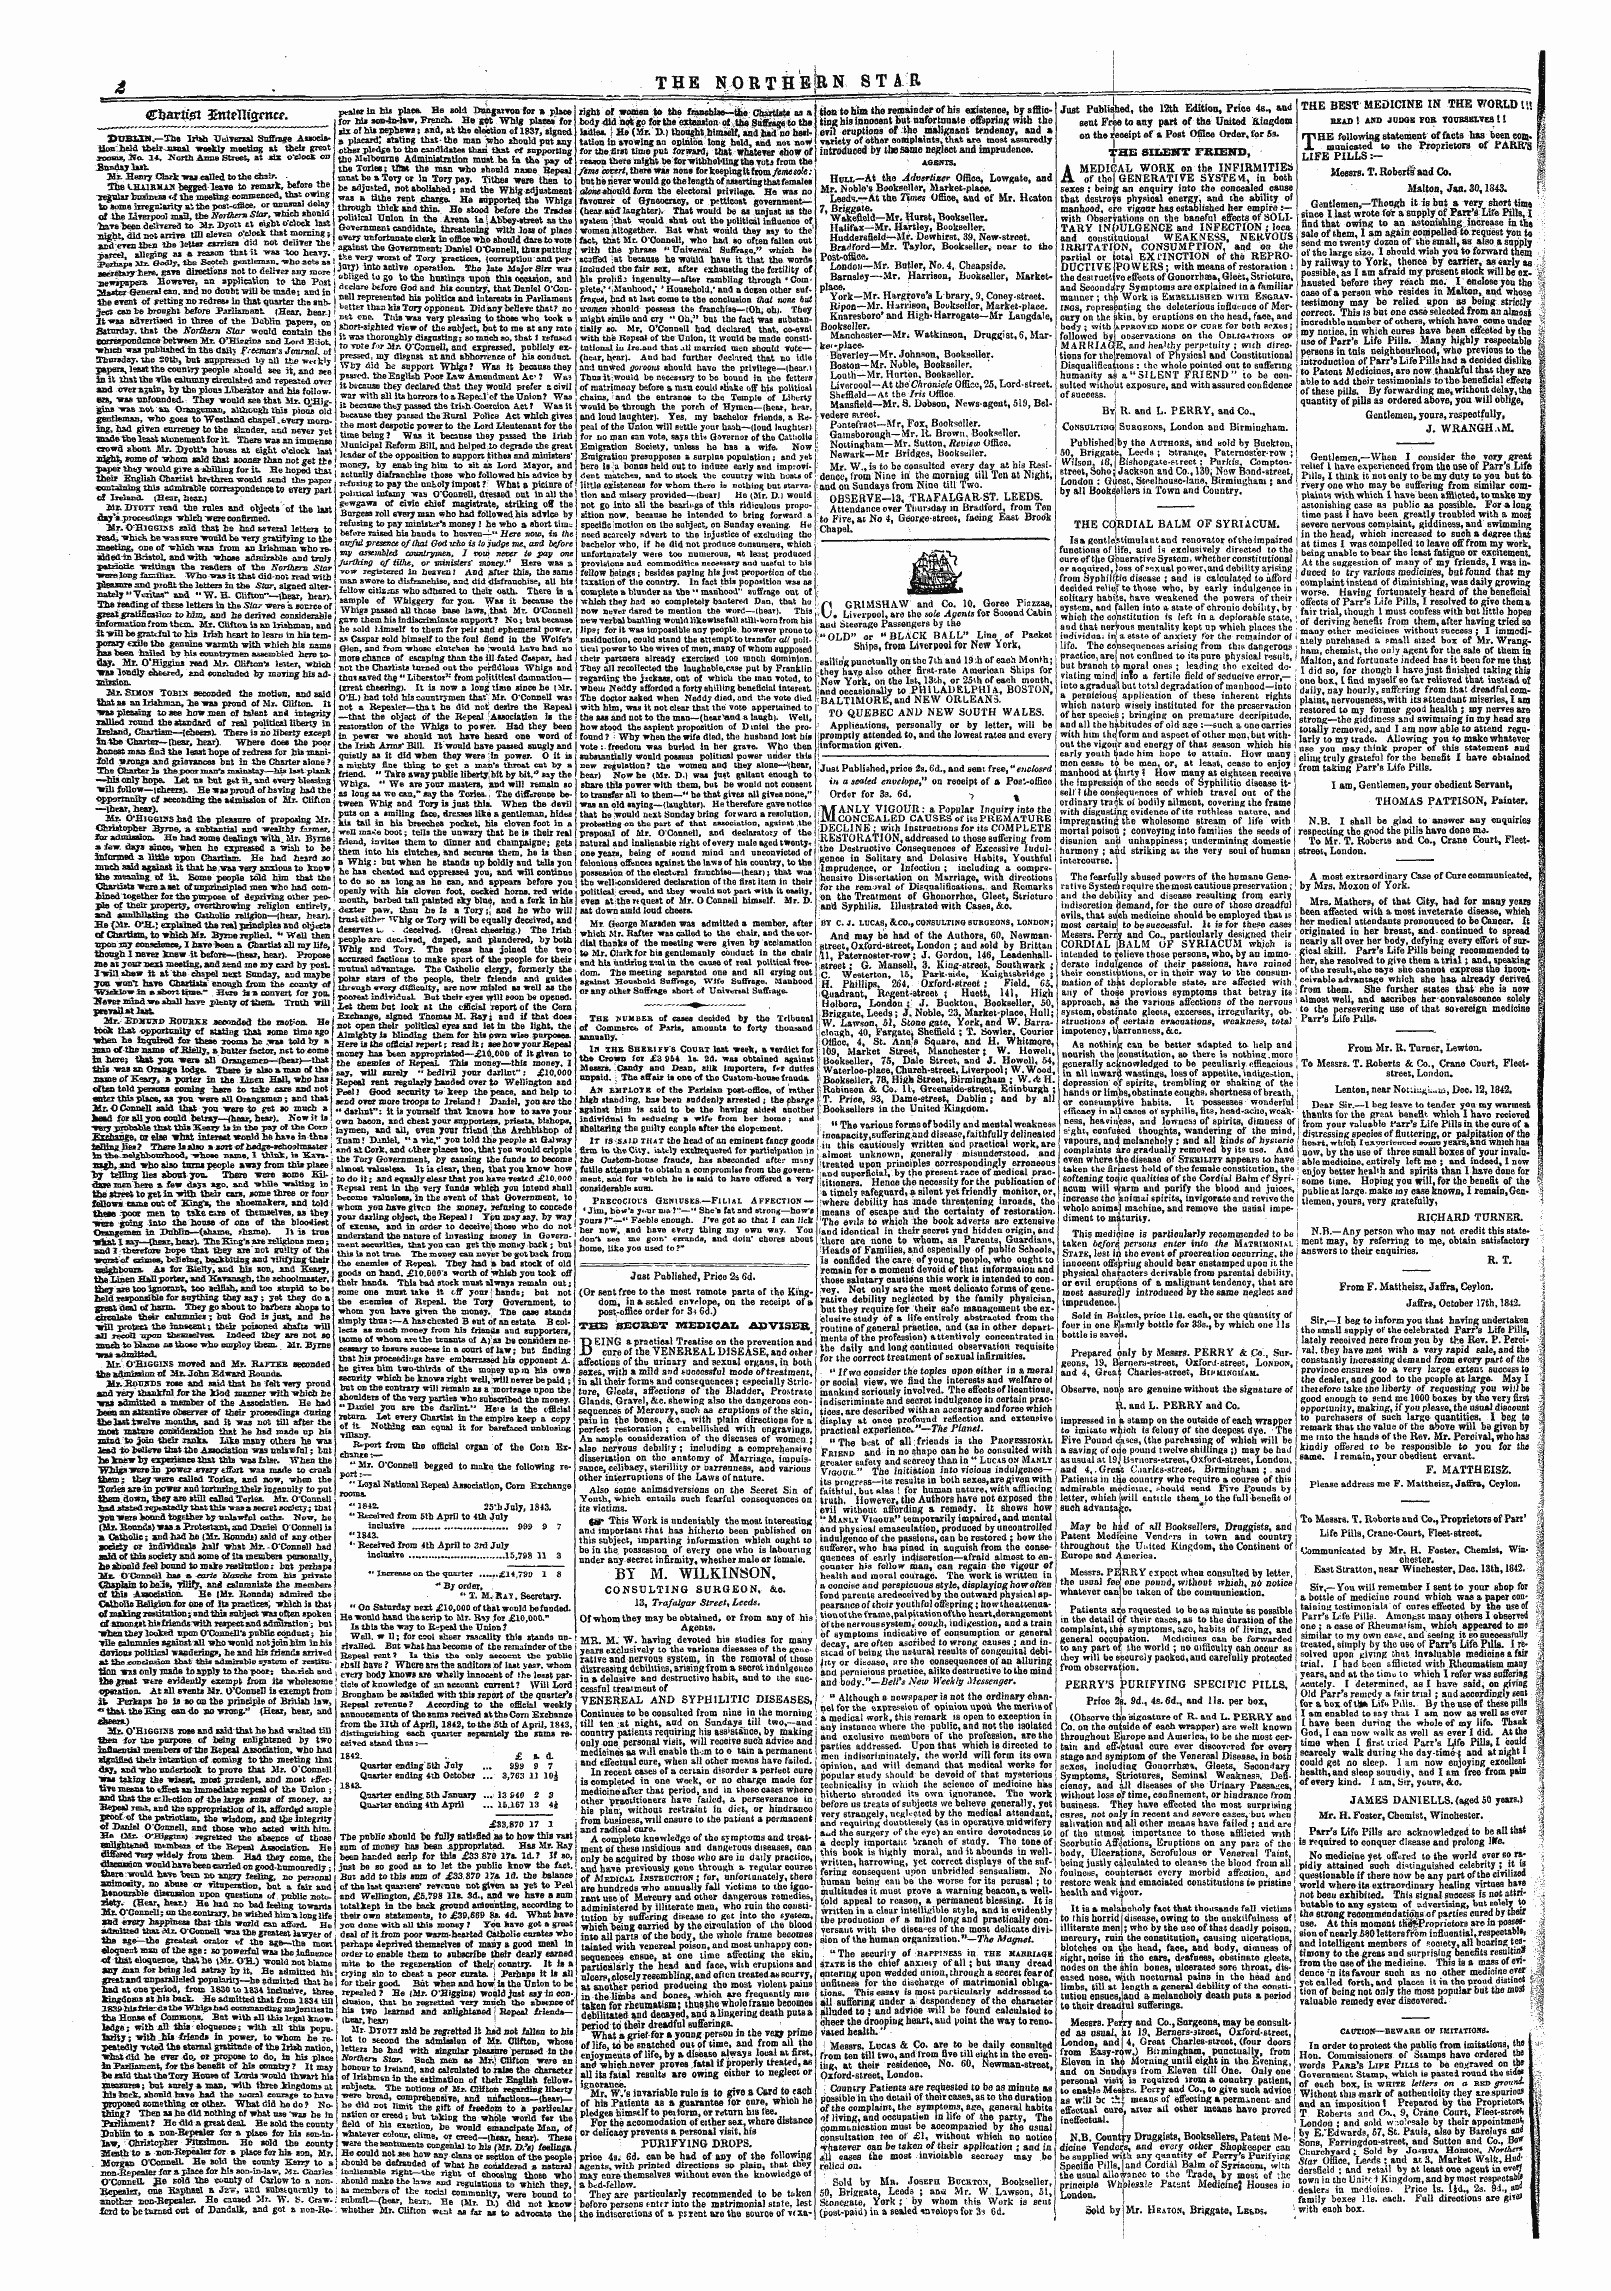 Northern Star (1837-1852): jS F Y, 2nd edition - Ctjariigt Dmteuismcr